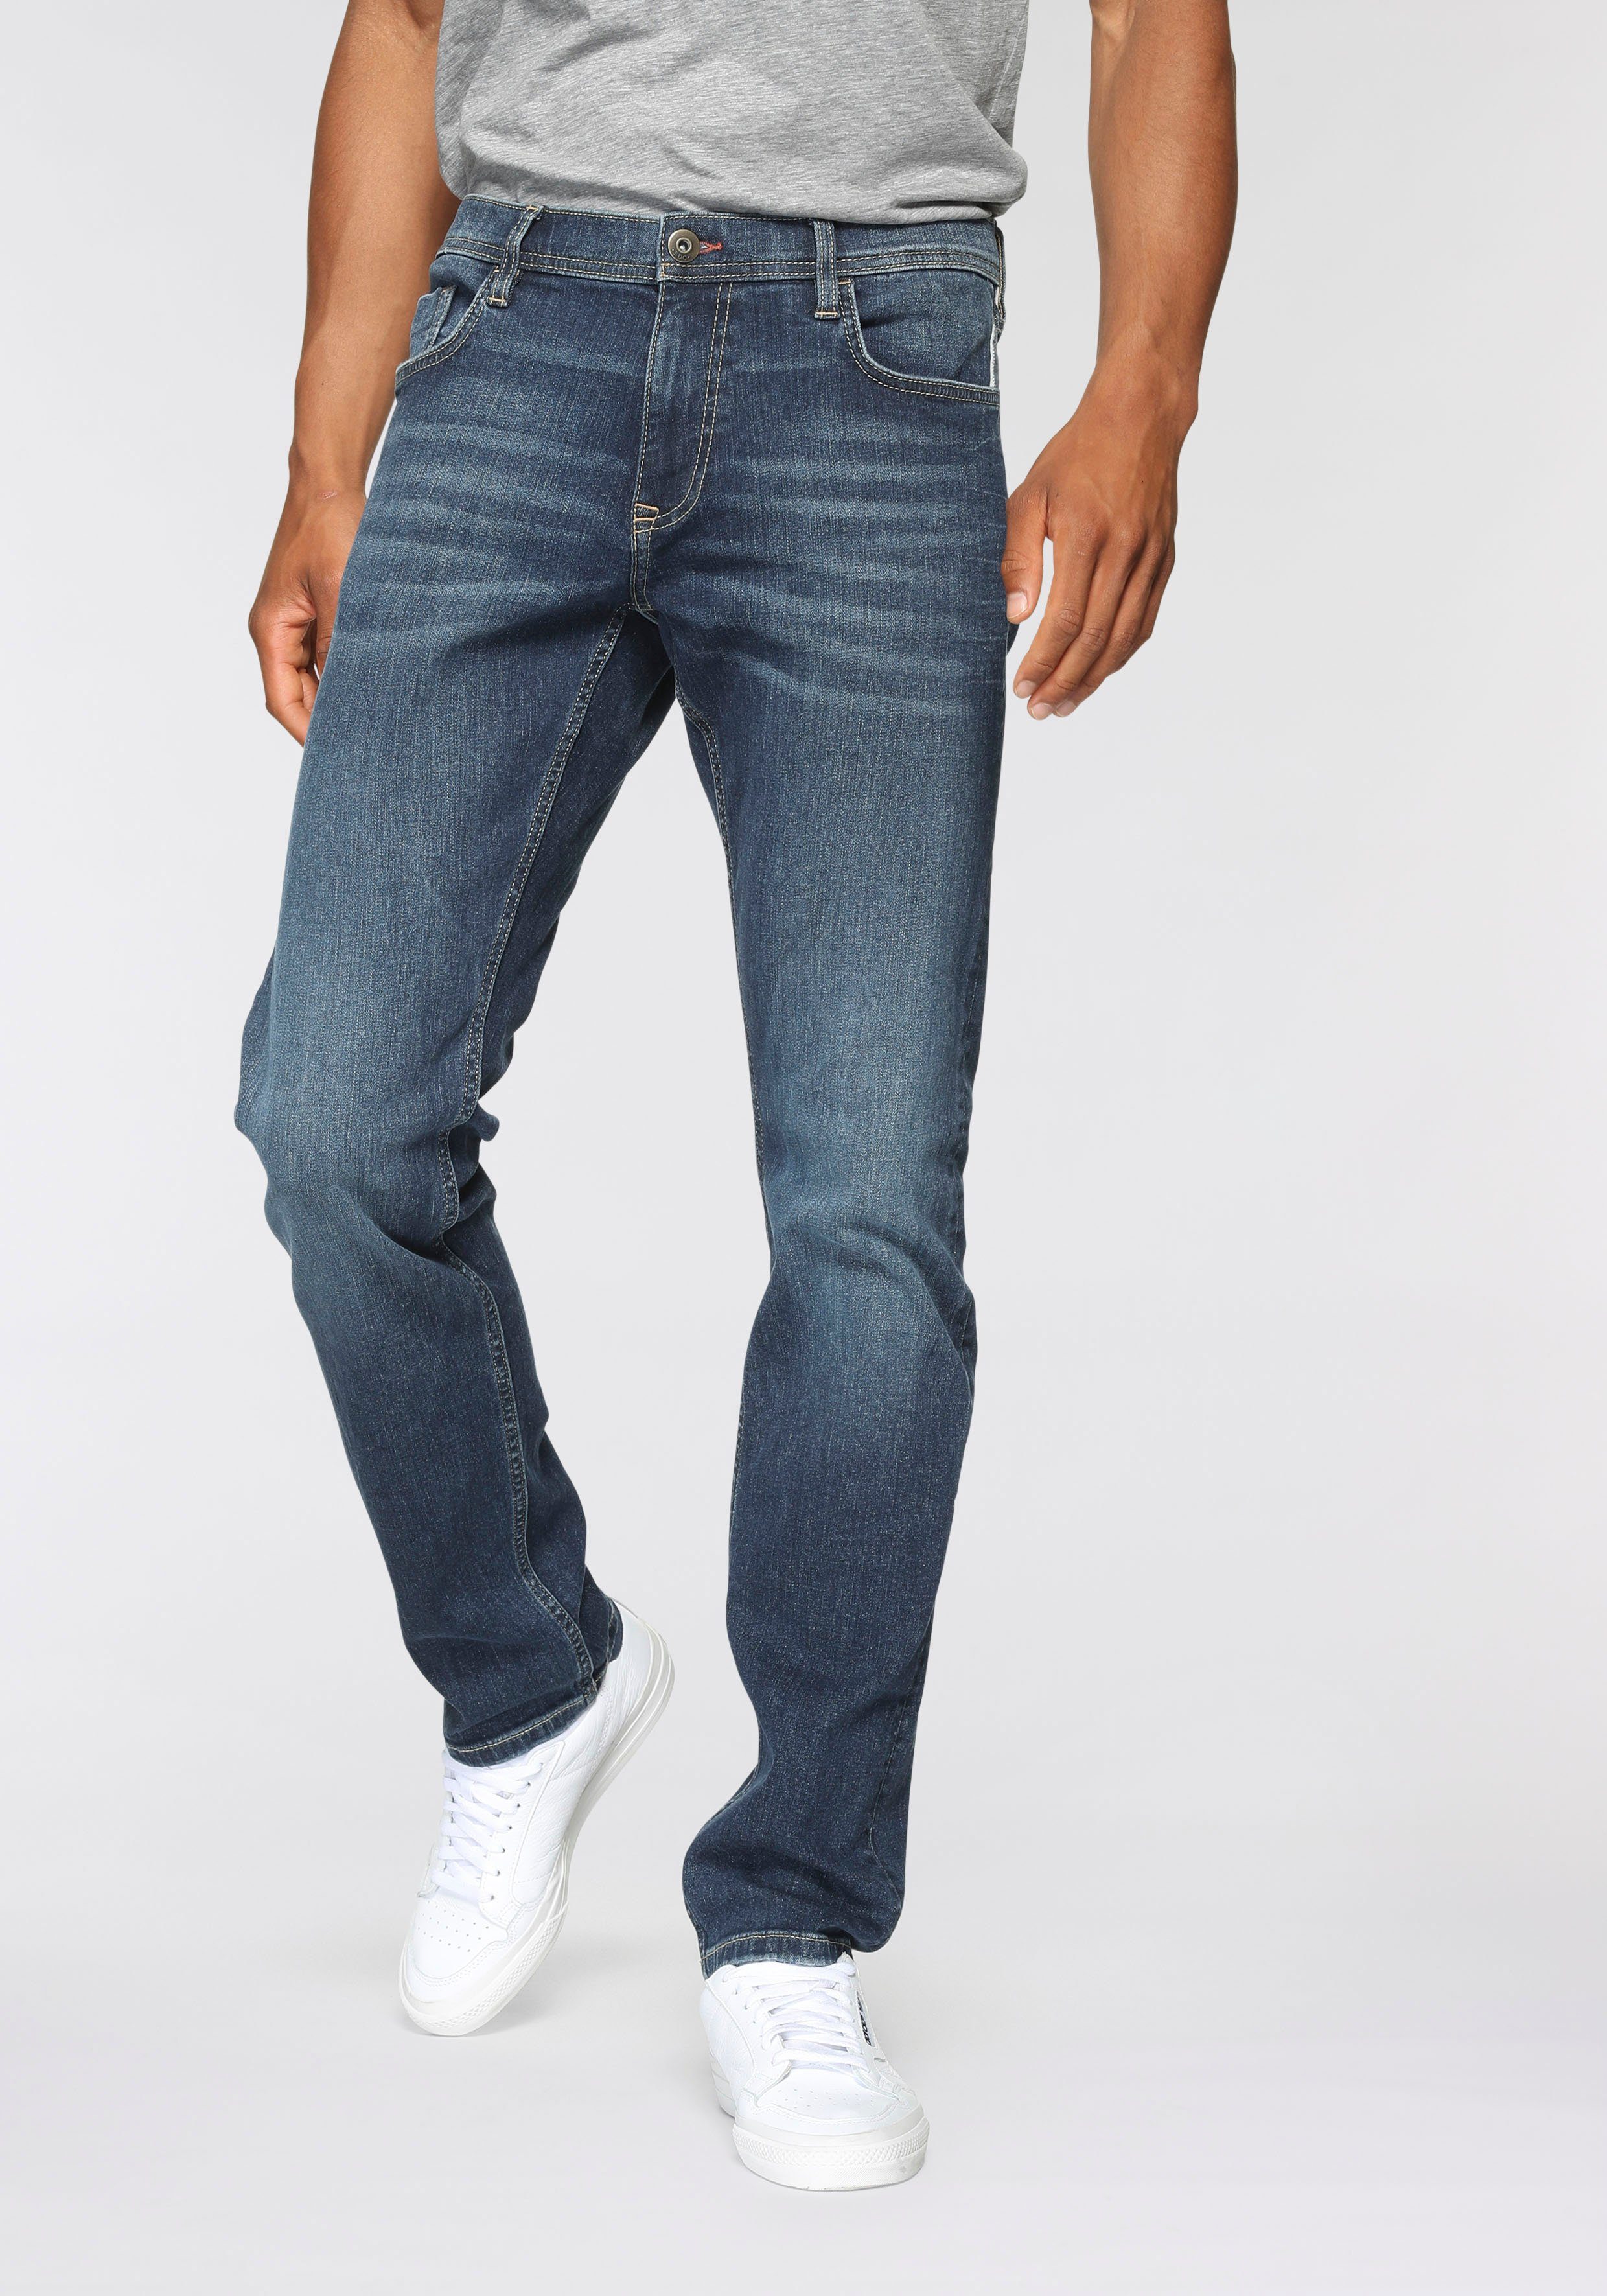 Esprit Jeans Herren online kaufen | OTTO